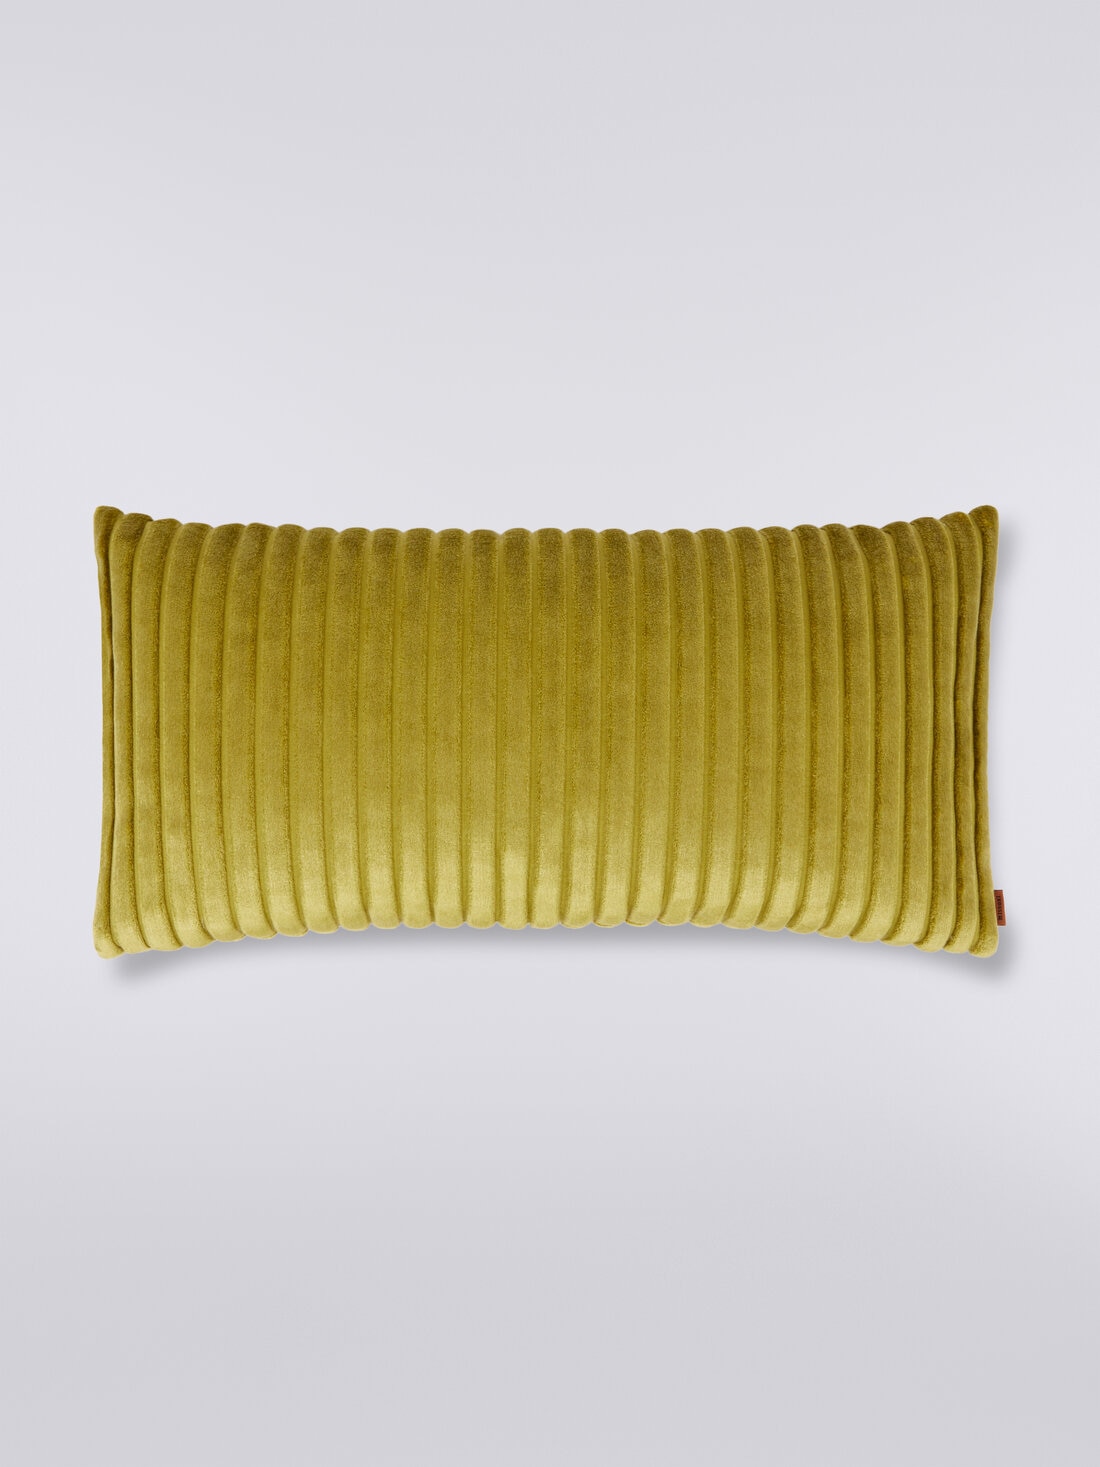 Coomba Cushion 30X60, Multicoloured  - 8033050074563 - 0